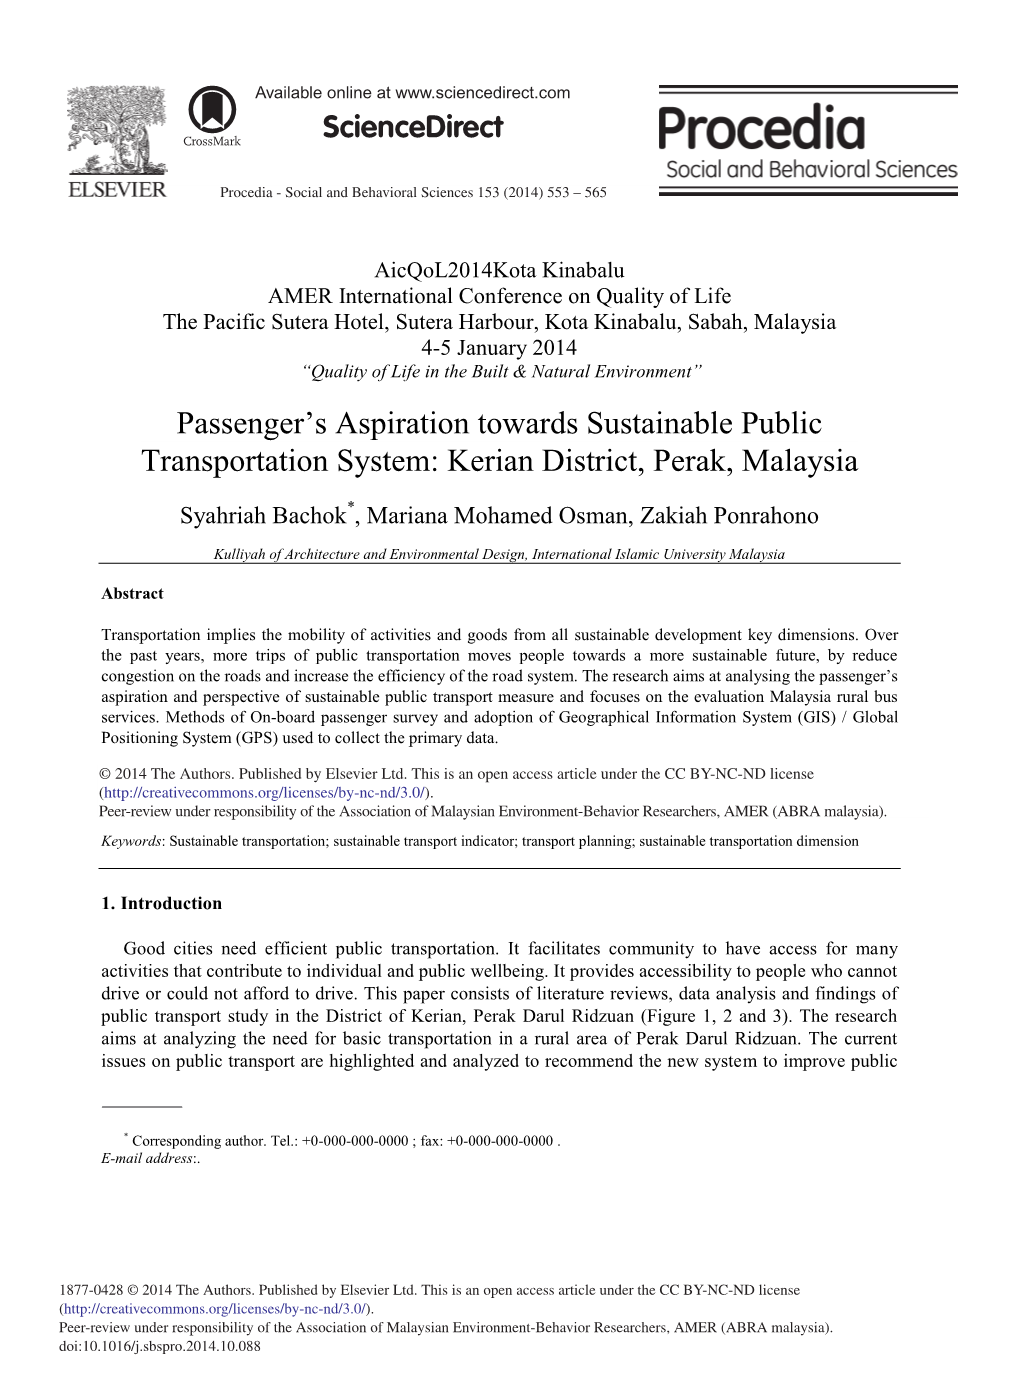 Passenger's Aspiration Towards Sustainable Public